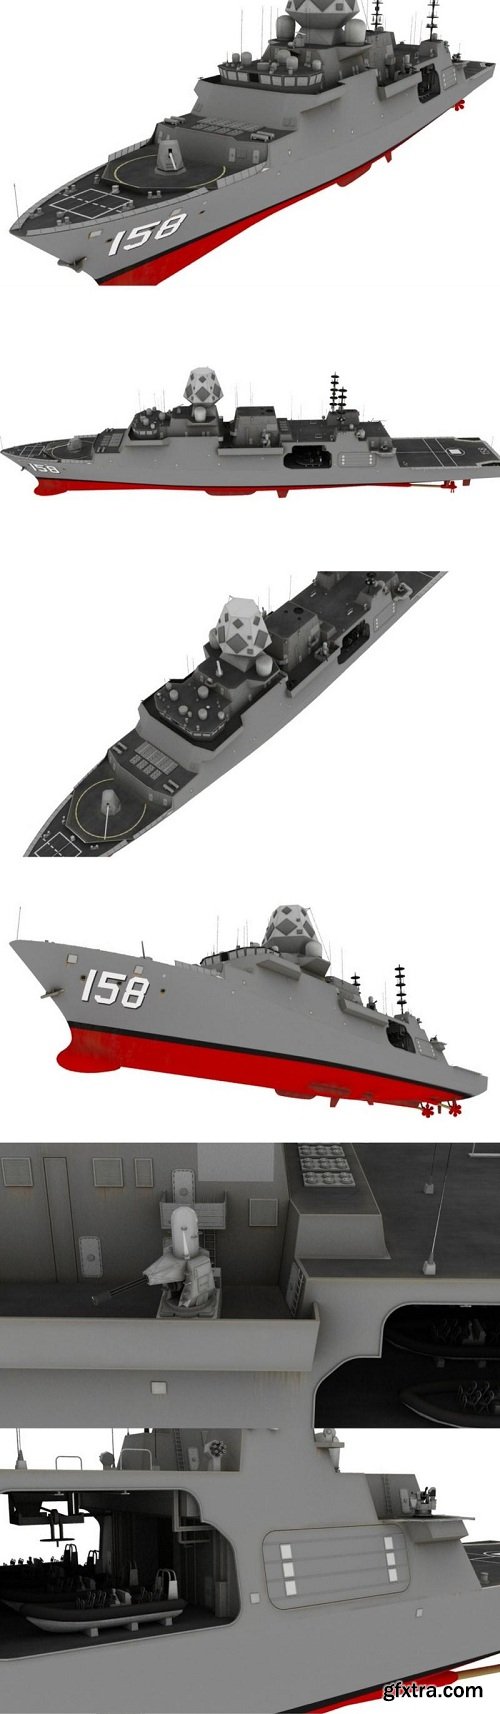 BAE T-26 Frigate Vessel 3D Model